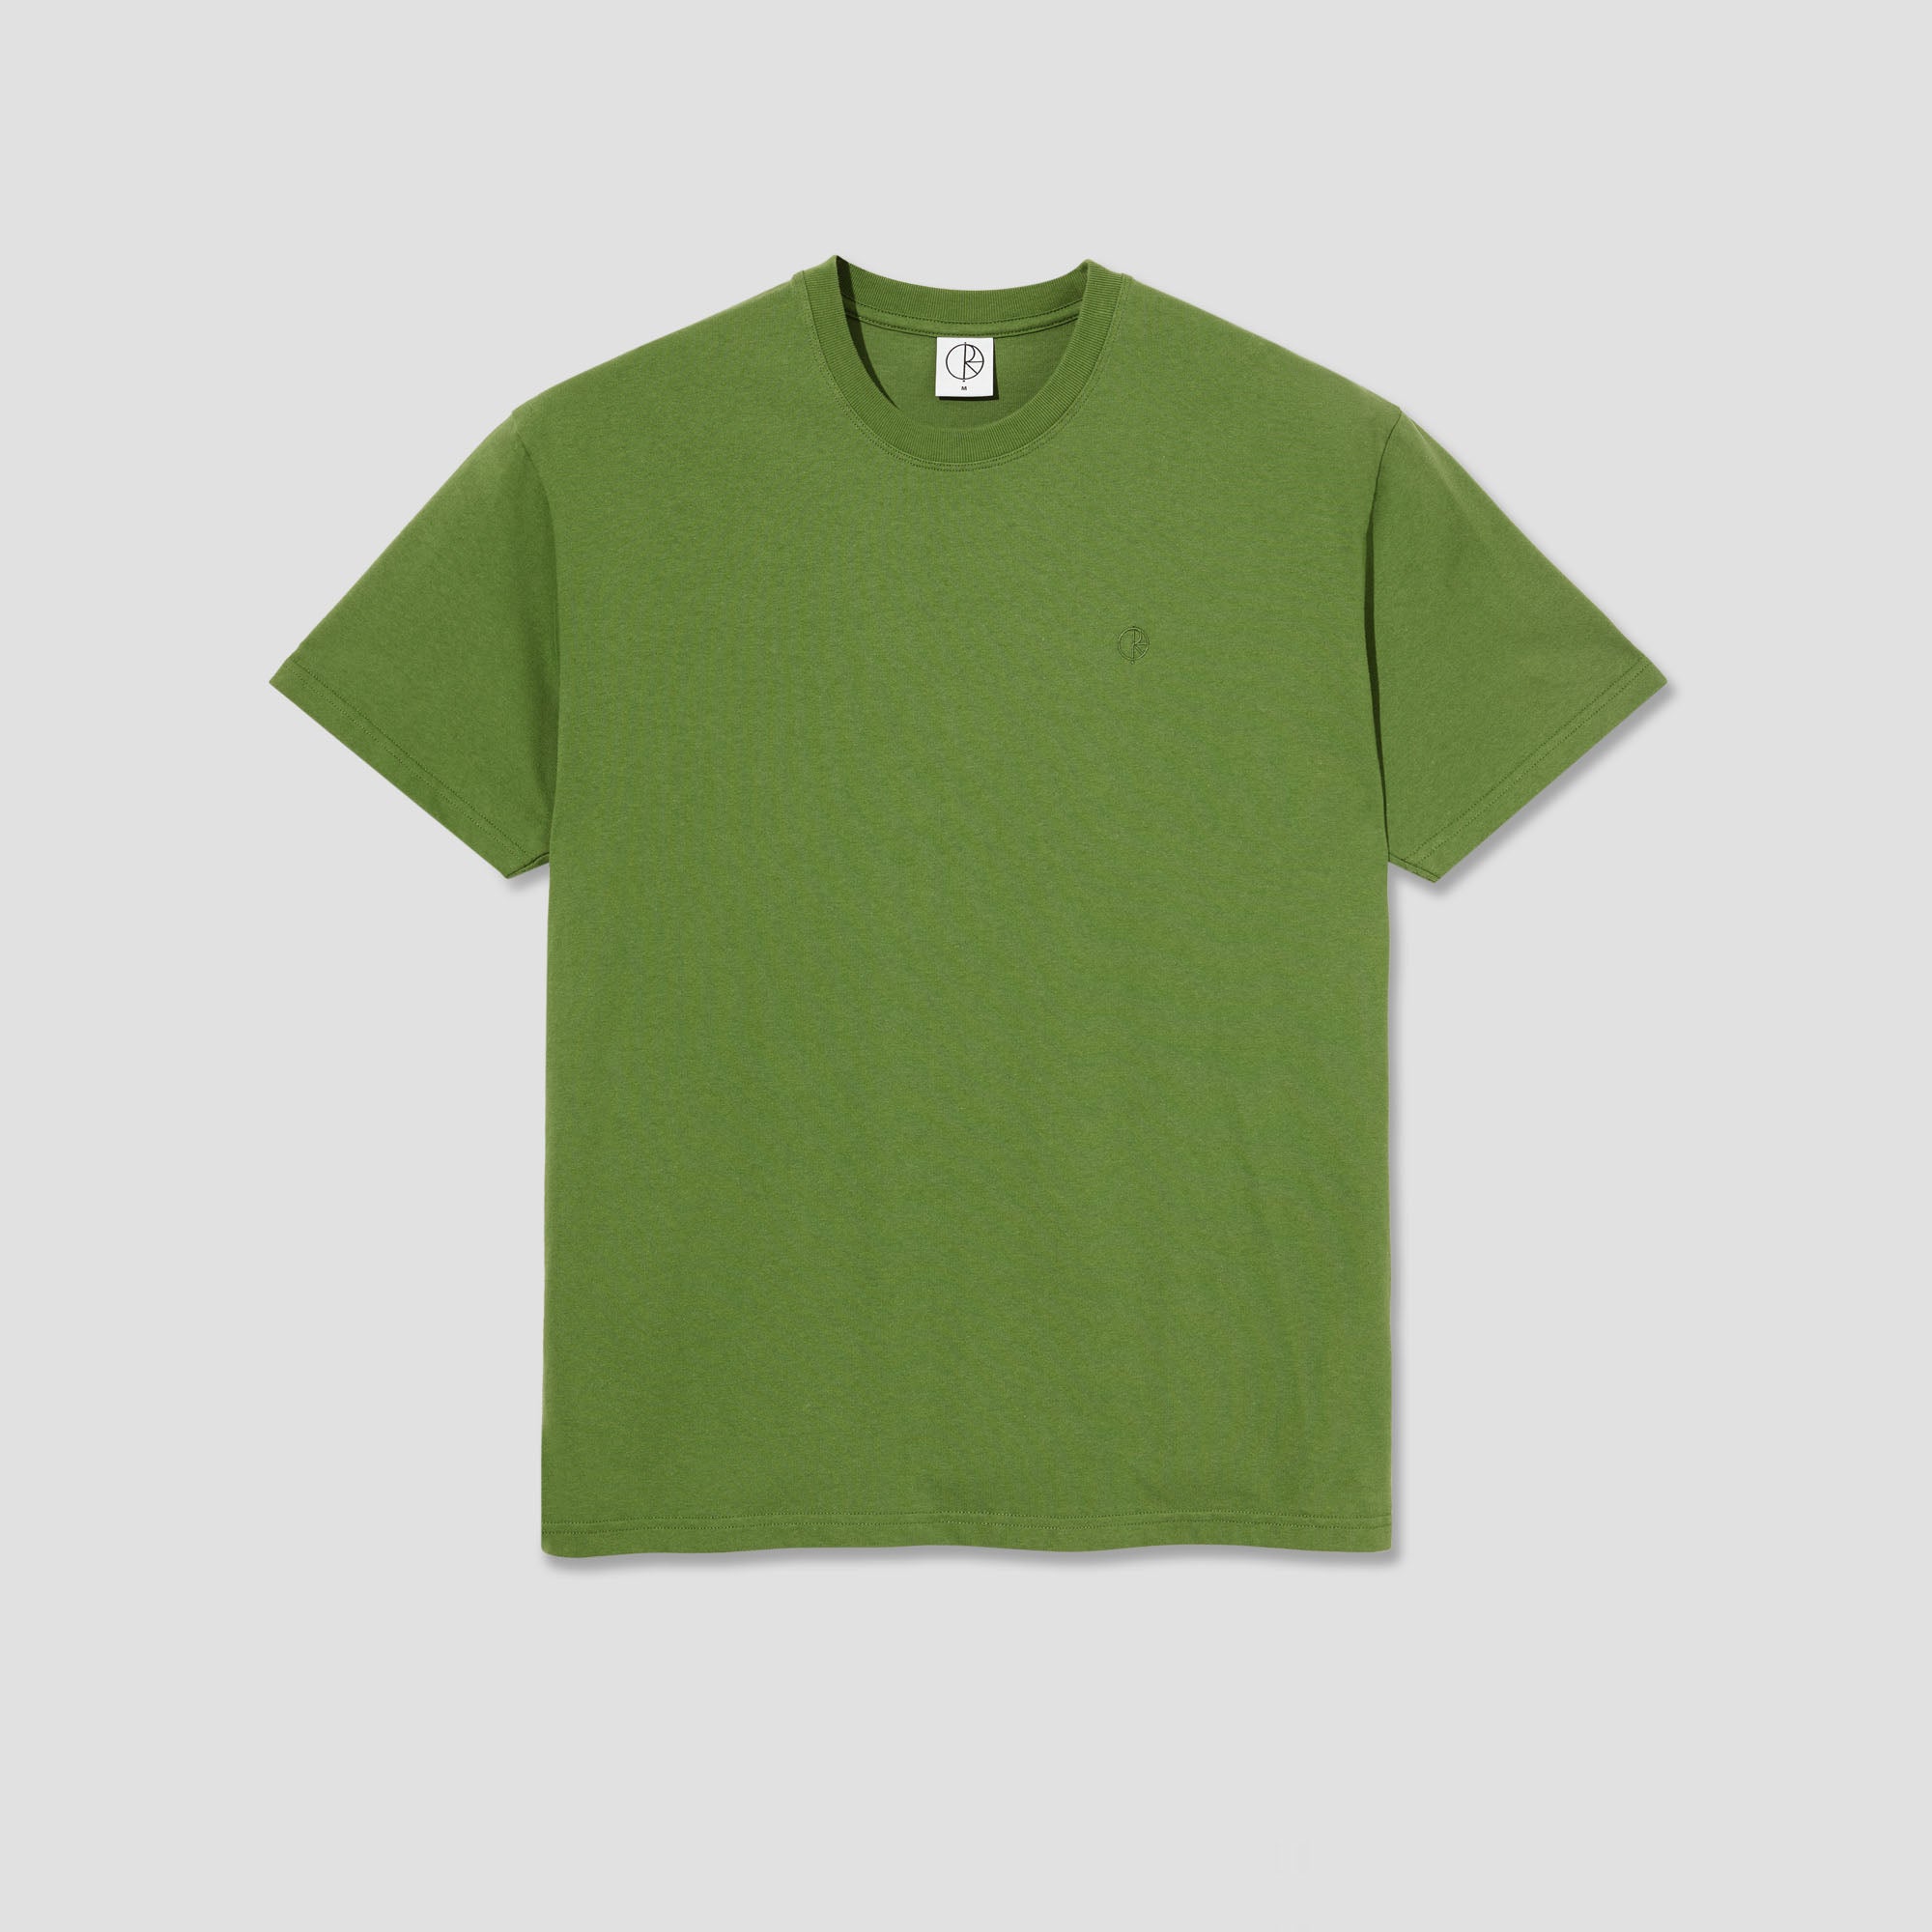 Polar Team T-Shirt Garden Green